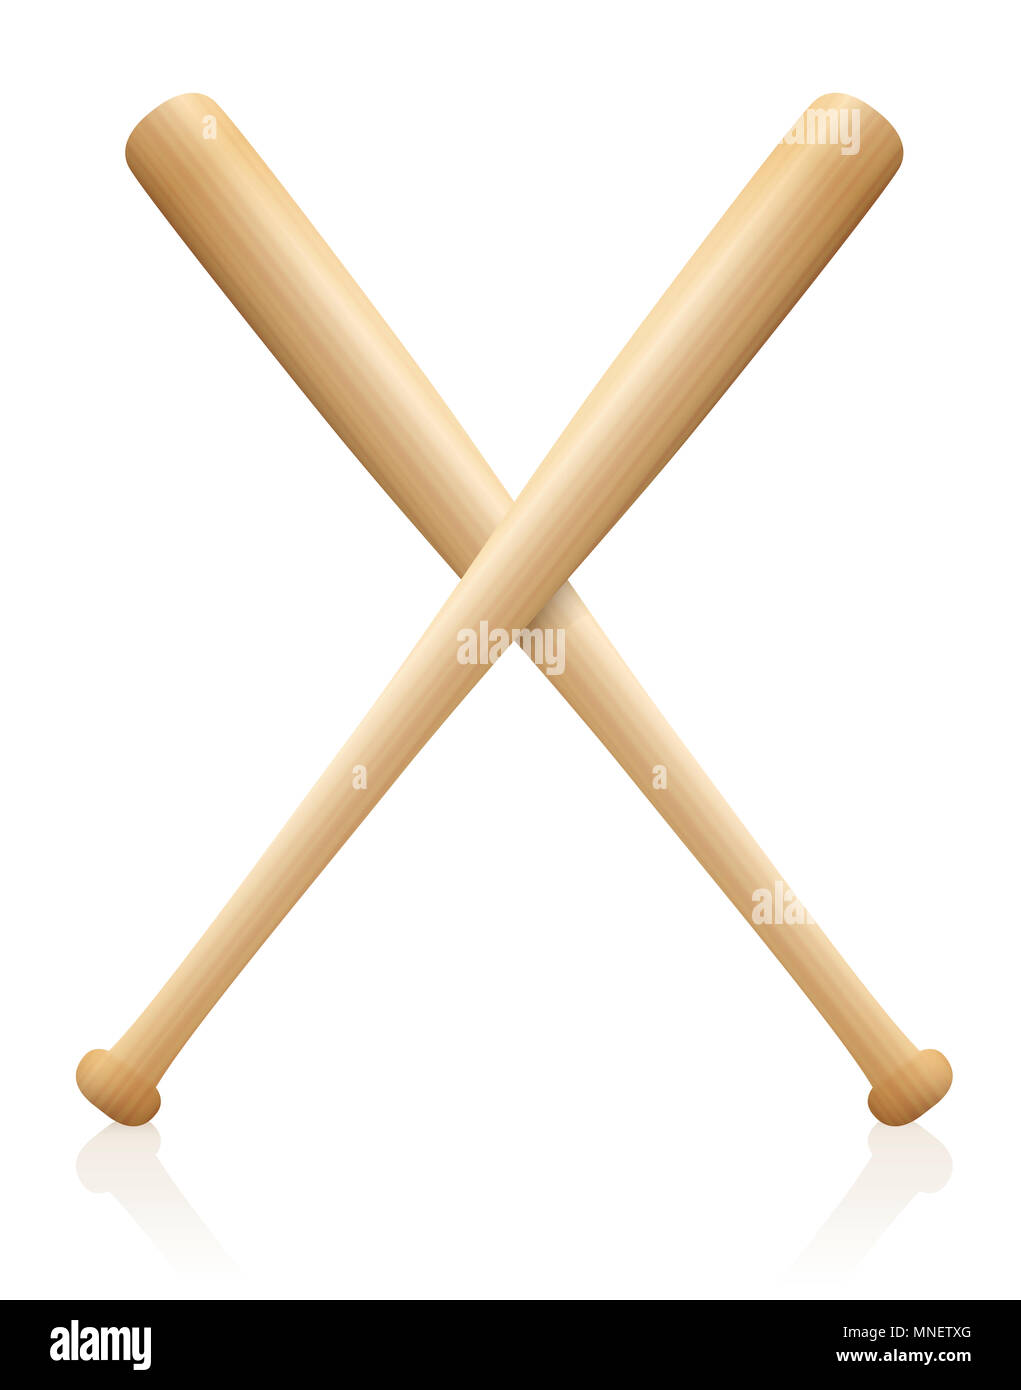 Baseballschläger x gekreuzt. Symbol für den sportlichen Wettkampf, Spiel, Wettbewerb, Kampf, Kämpfen. Holz- Strukturierte - Abbildung von zwei fledermäuse auf Weiß. Stockfoto